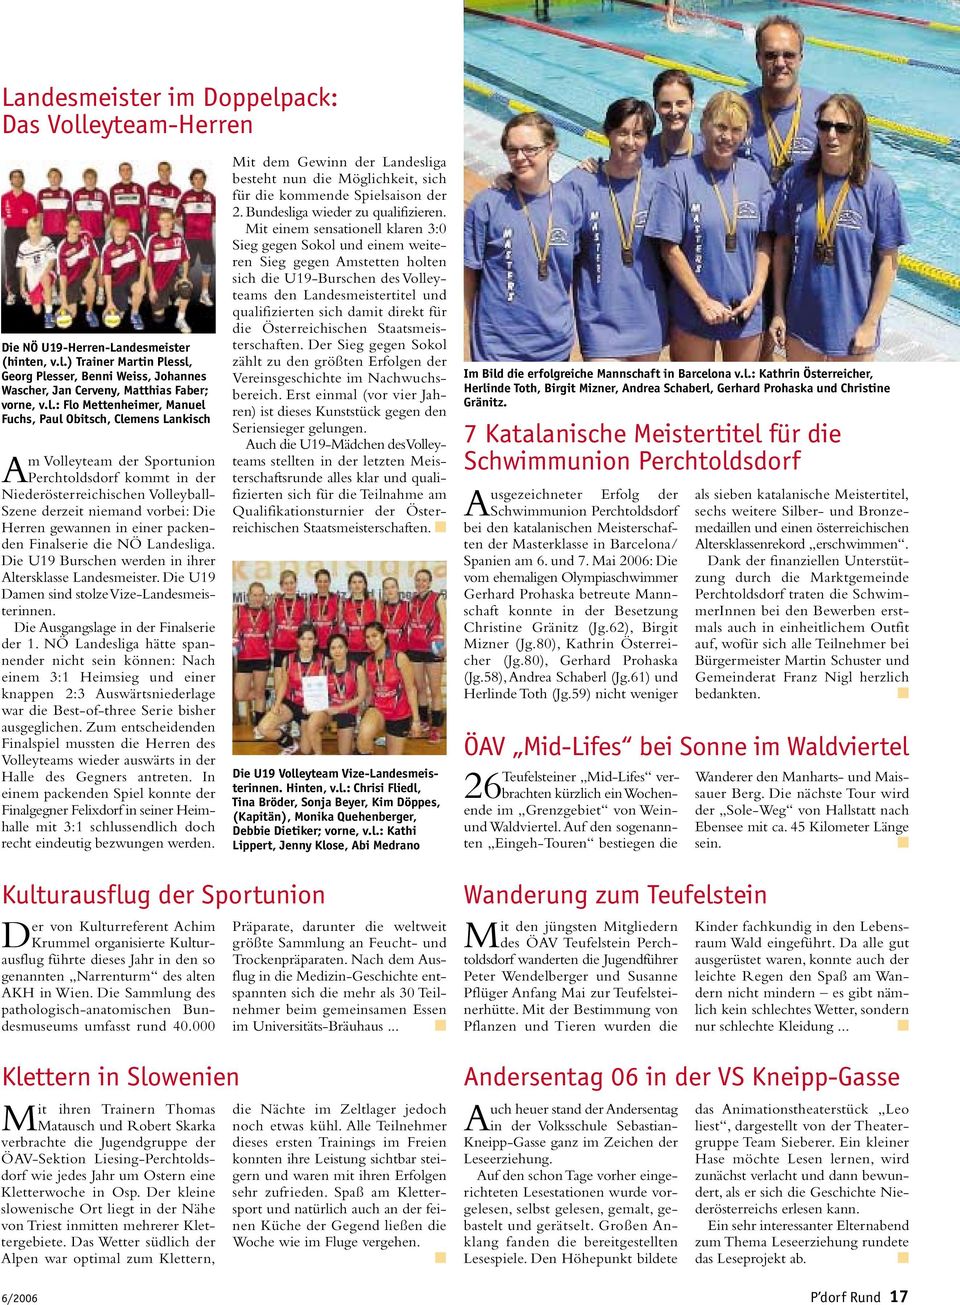 gewannen in einer packenden Finalserie die NÖ Landesliga. Die U19 Burschen werden in ihrer Altersklasse Landesmeister. Die U19 Damen sind stolze Vize-Landesmeisterinnen.